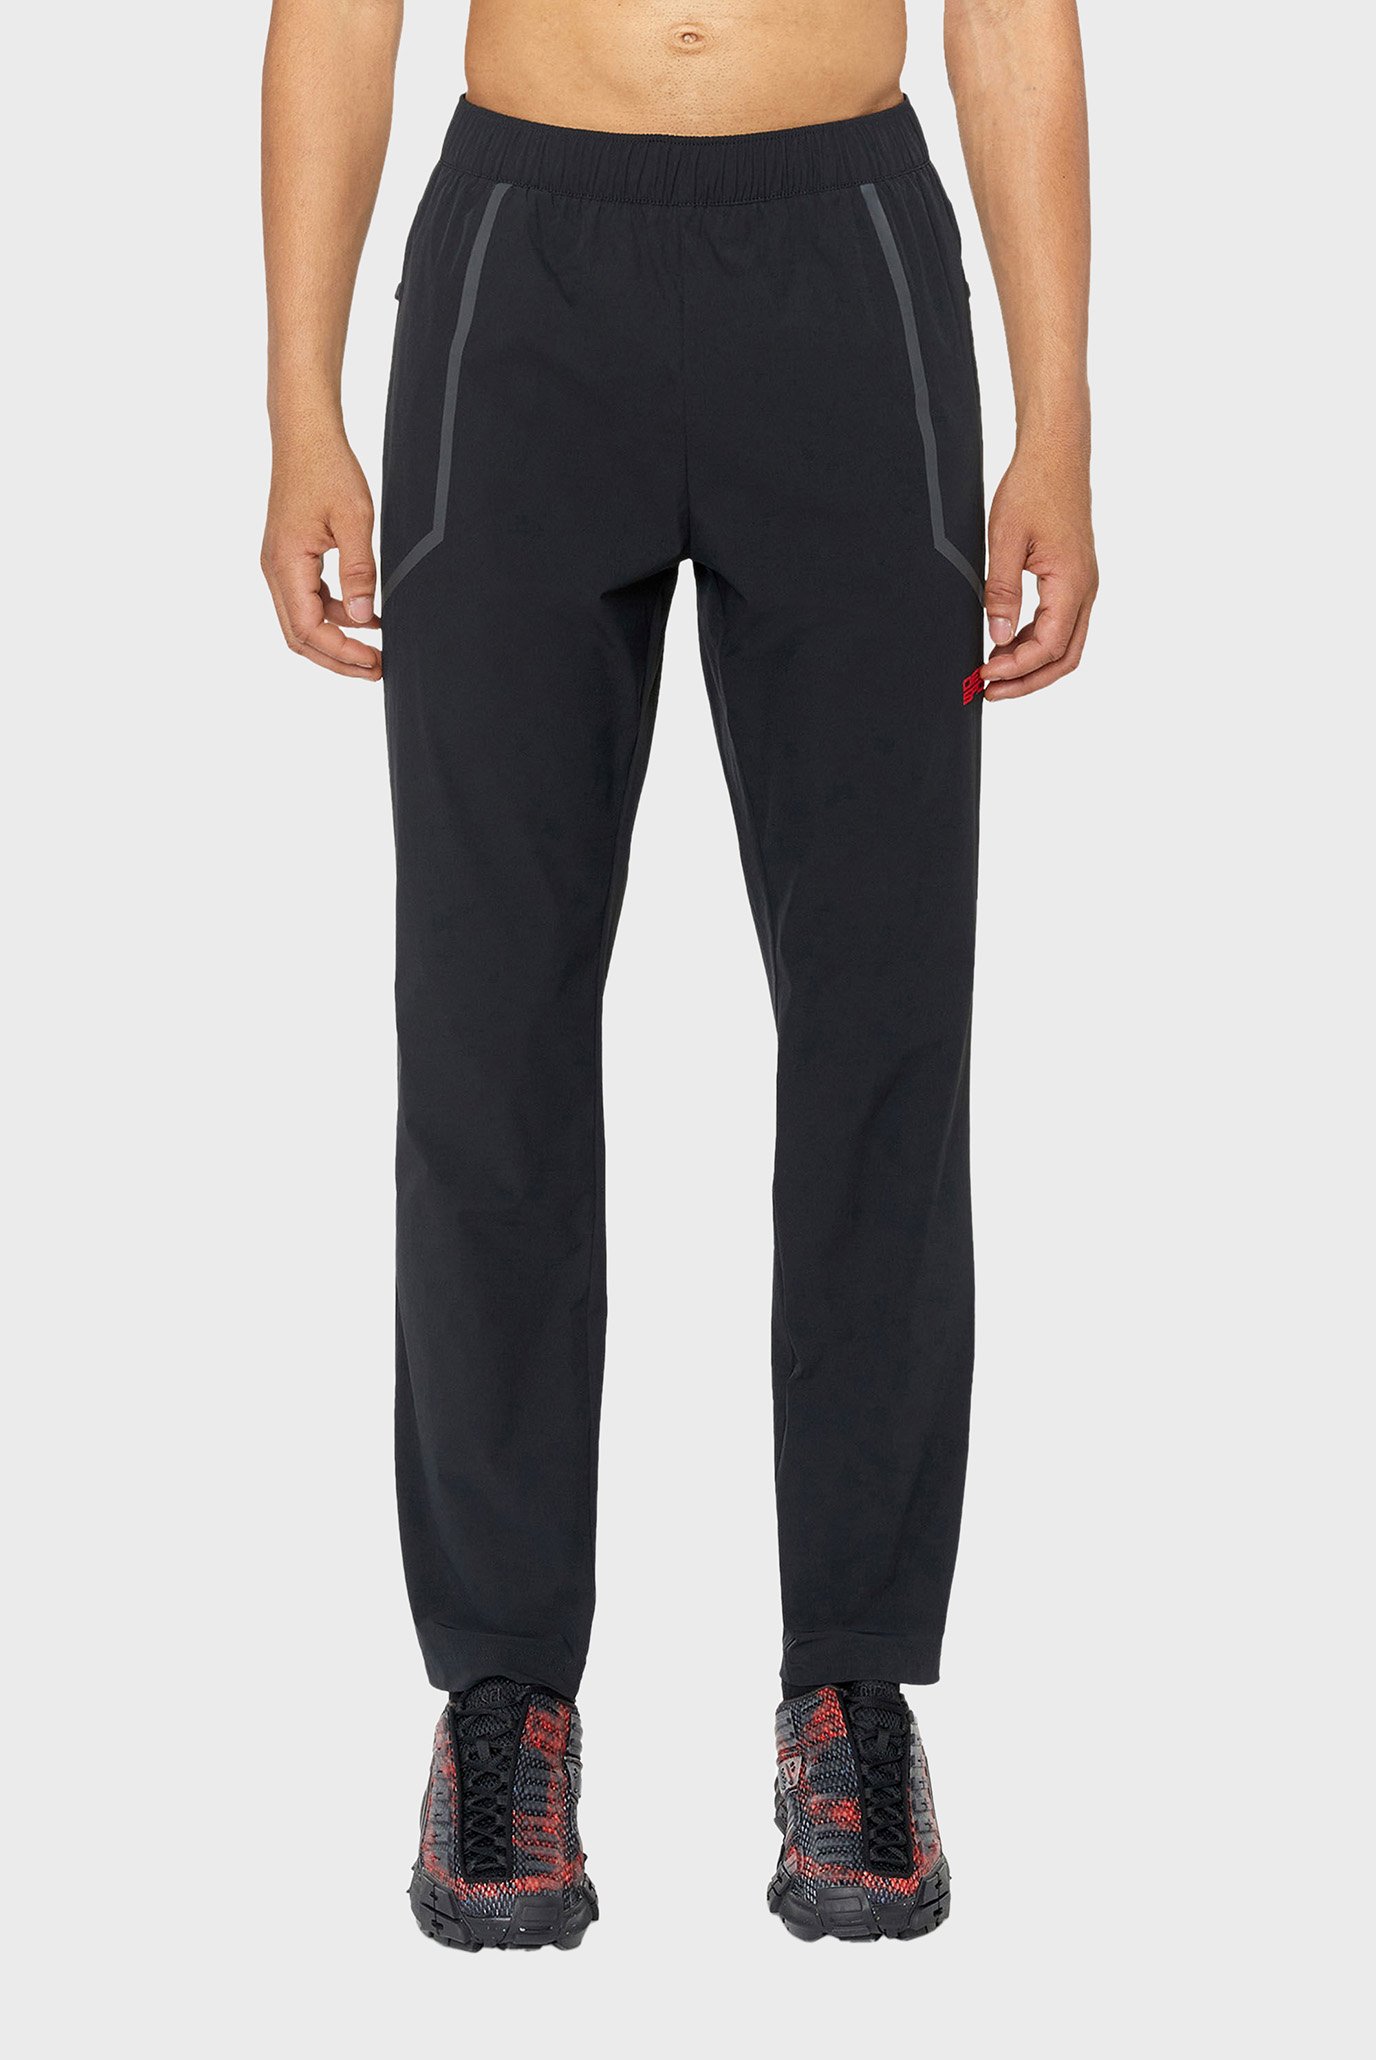 Чоловічі чорні спортивні штани AMWB-KEAN-WT16 1